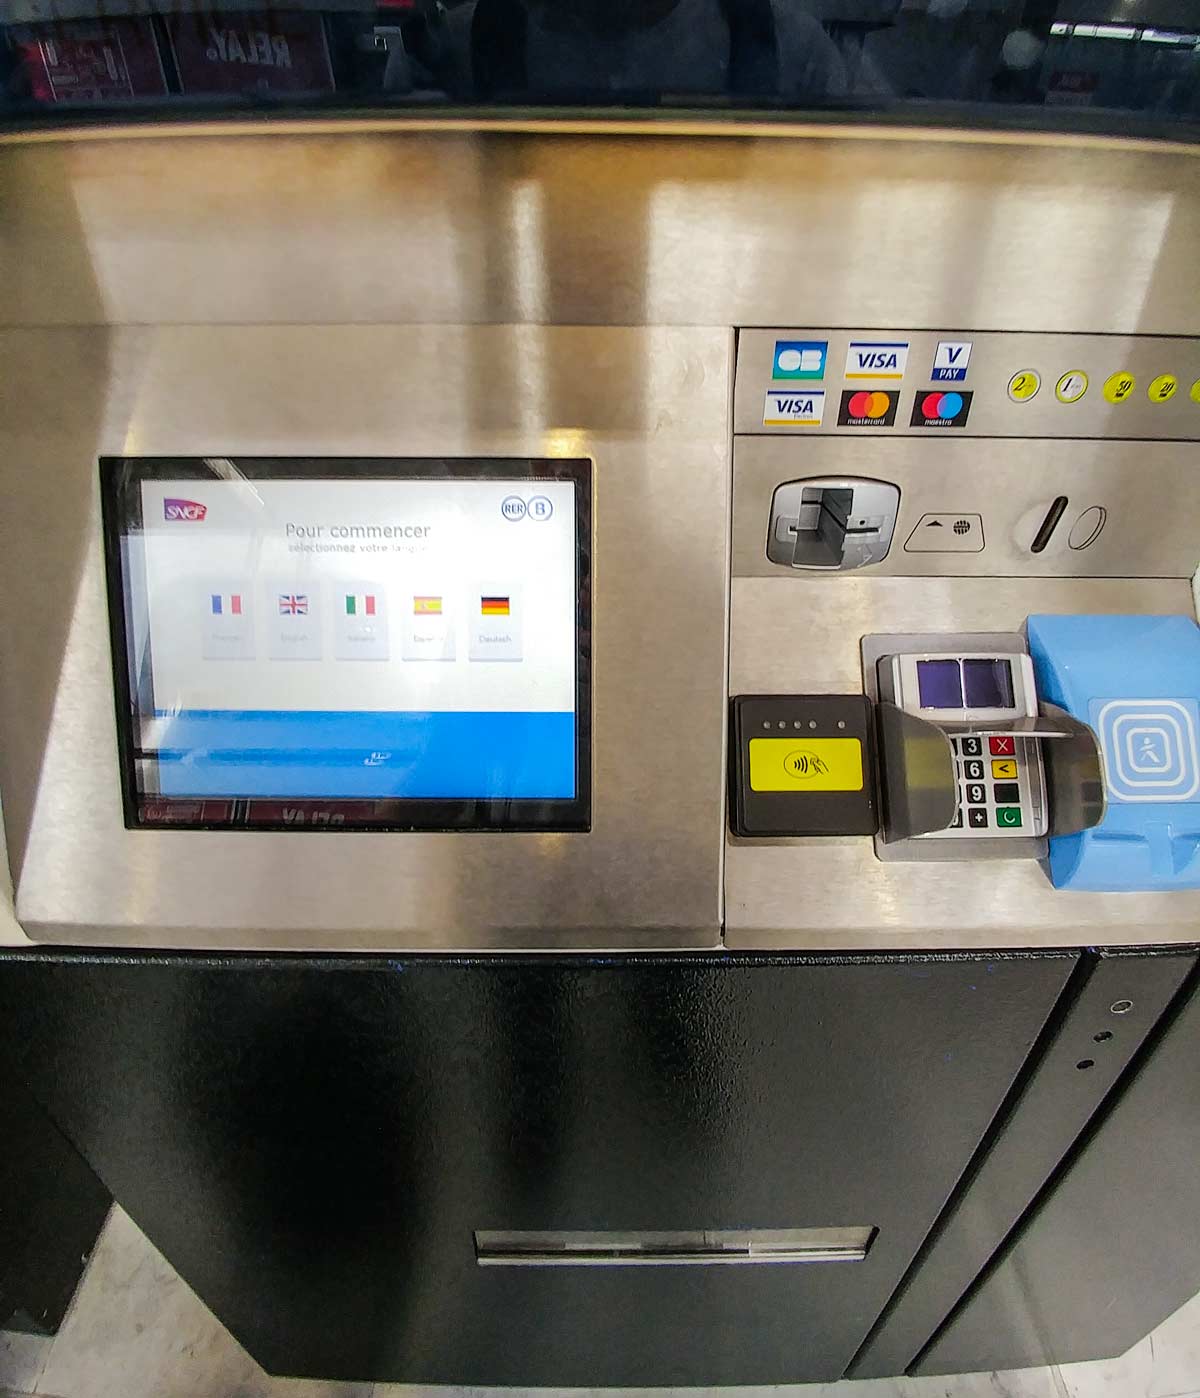 Paris Metro RER Ticket vending payment methods and screen